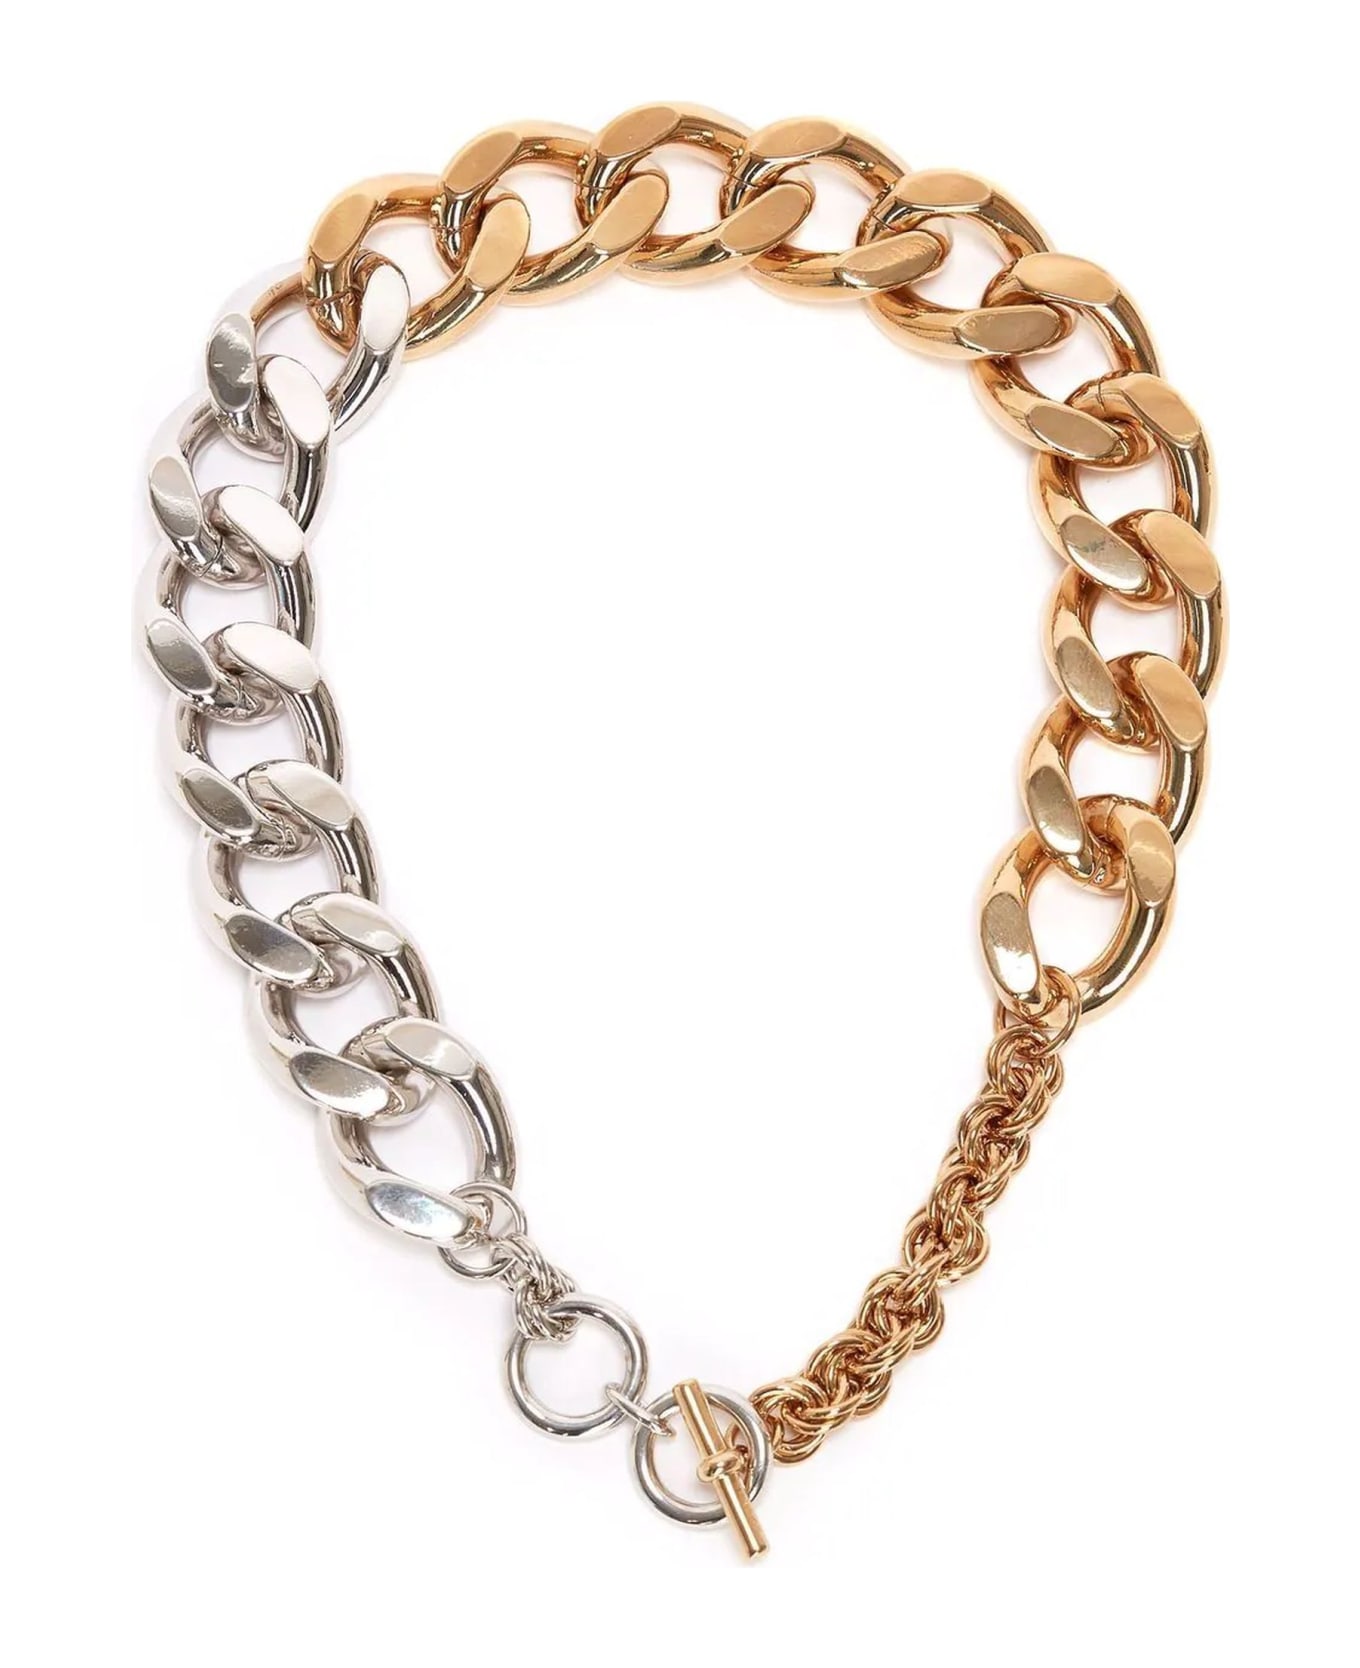 J.W. Anderson Gold-tone And Silver-tone Chain Necklace - Oro